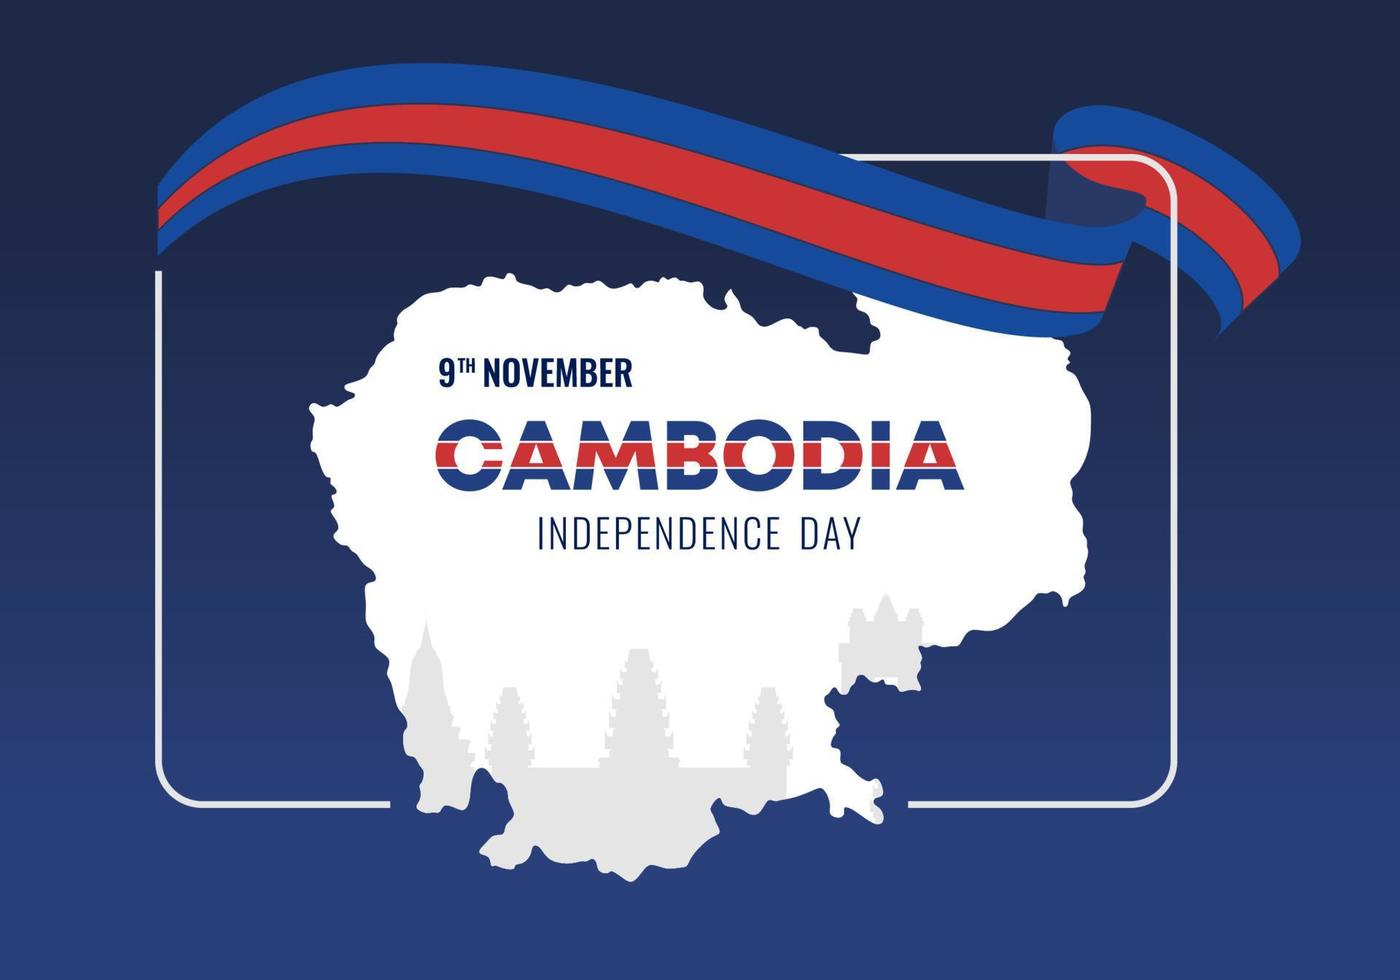 fond de la fête de l'indépendance du cambodge pour la célébration nationale. vecteur